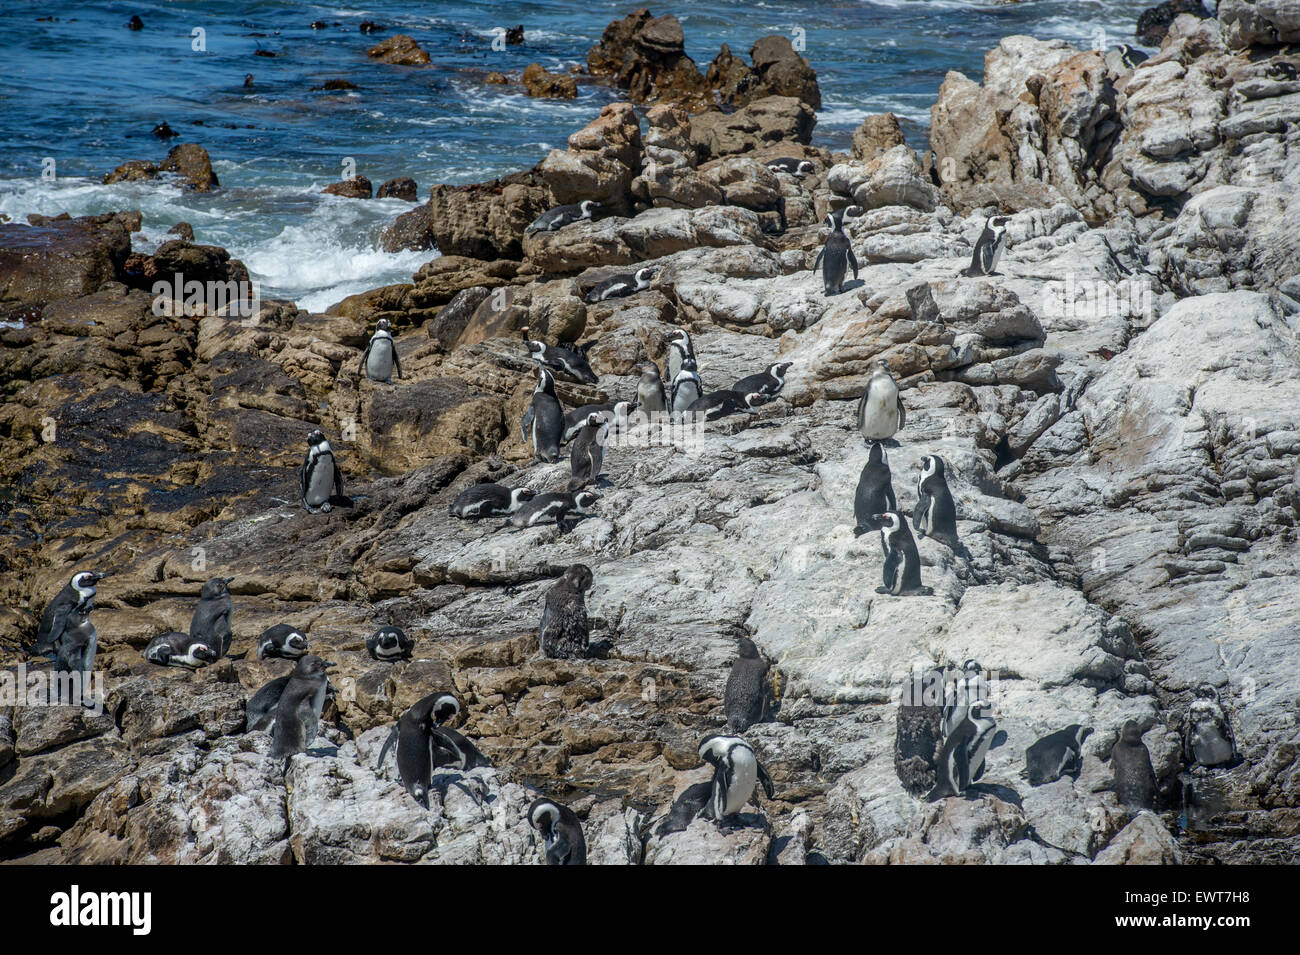 Betty's Bay, Afrique du Sud - pingouins africains (Spheniscidae) par l'eau Banque D'Images